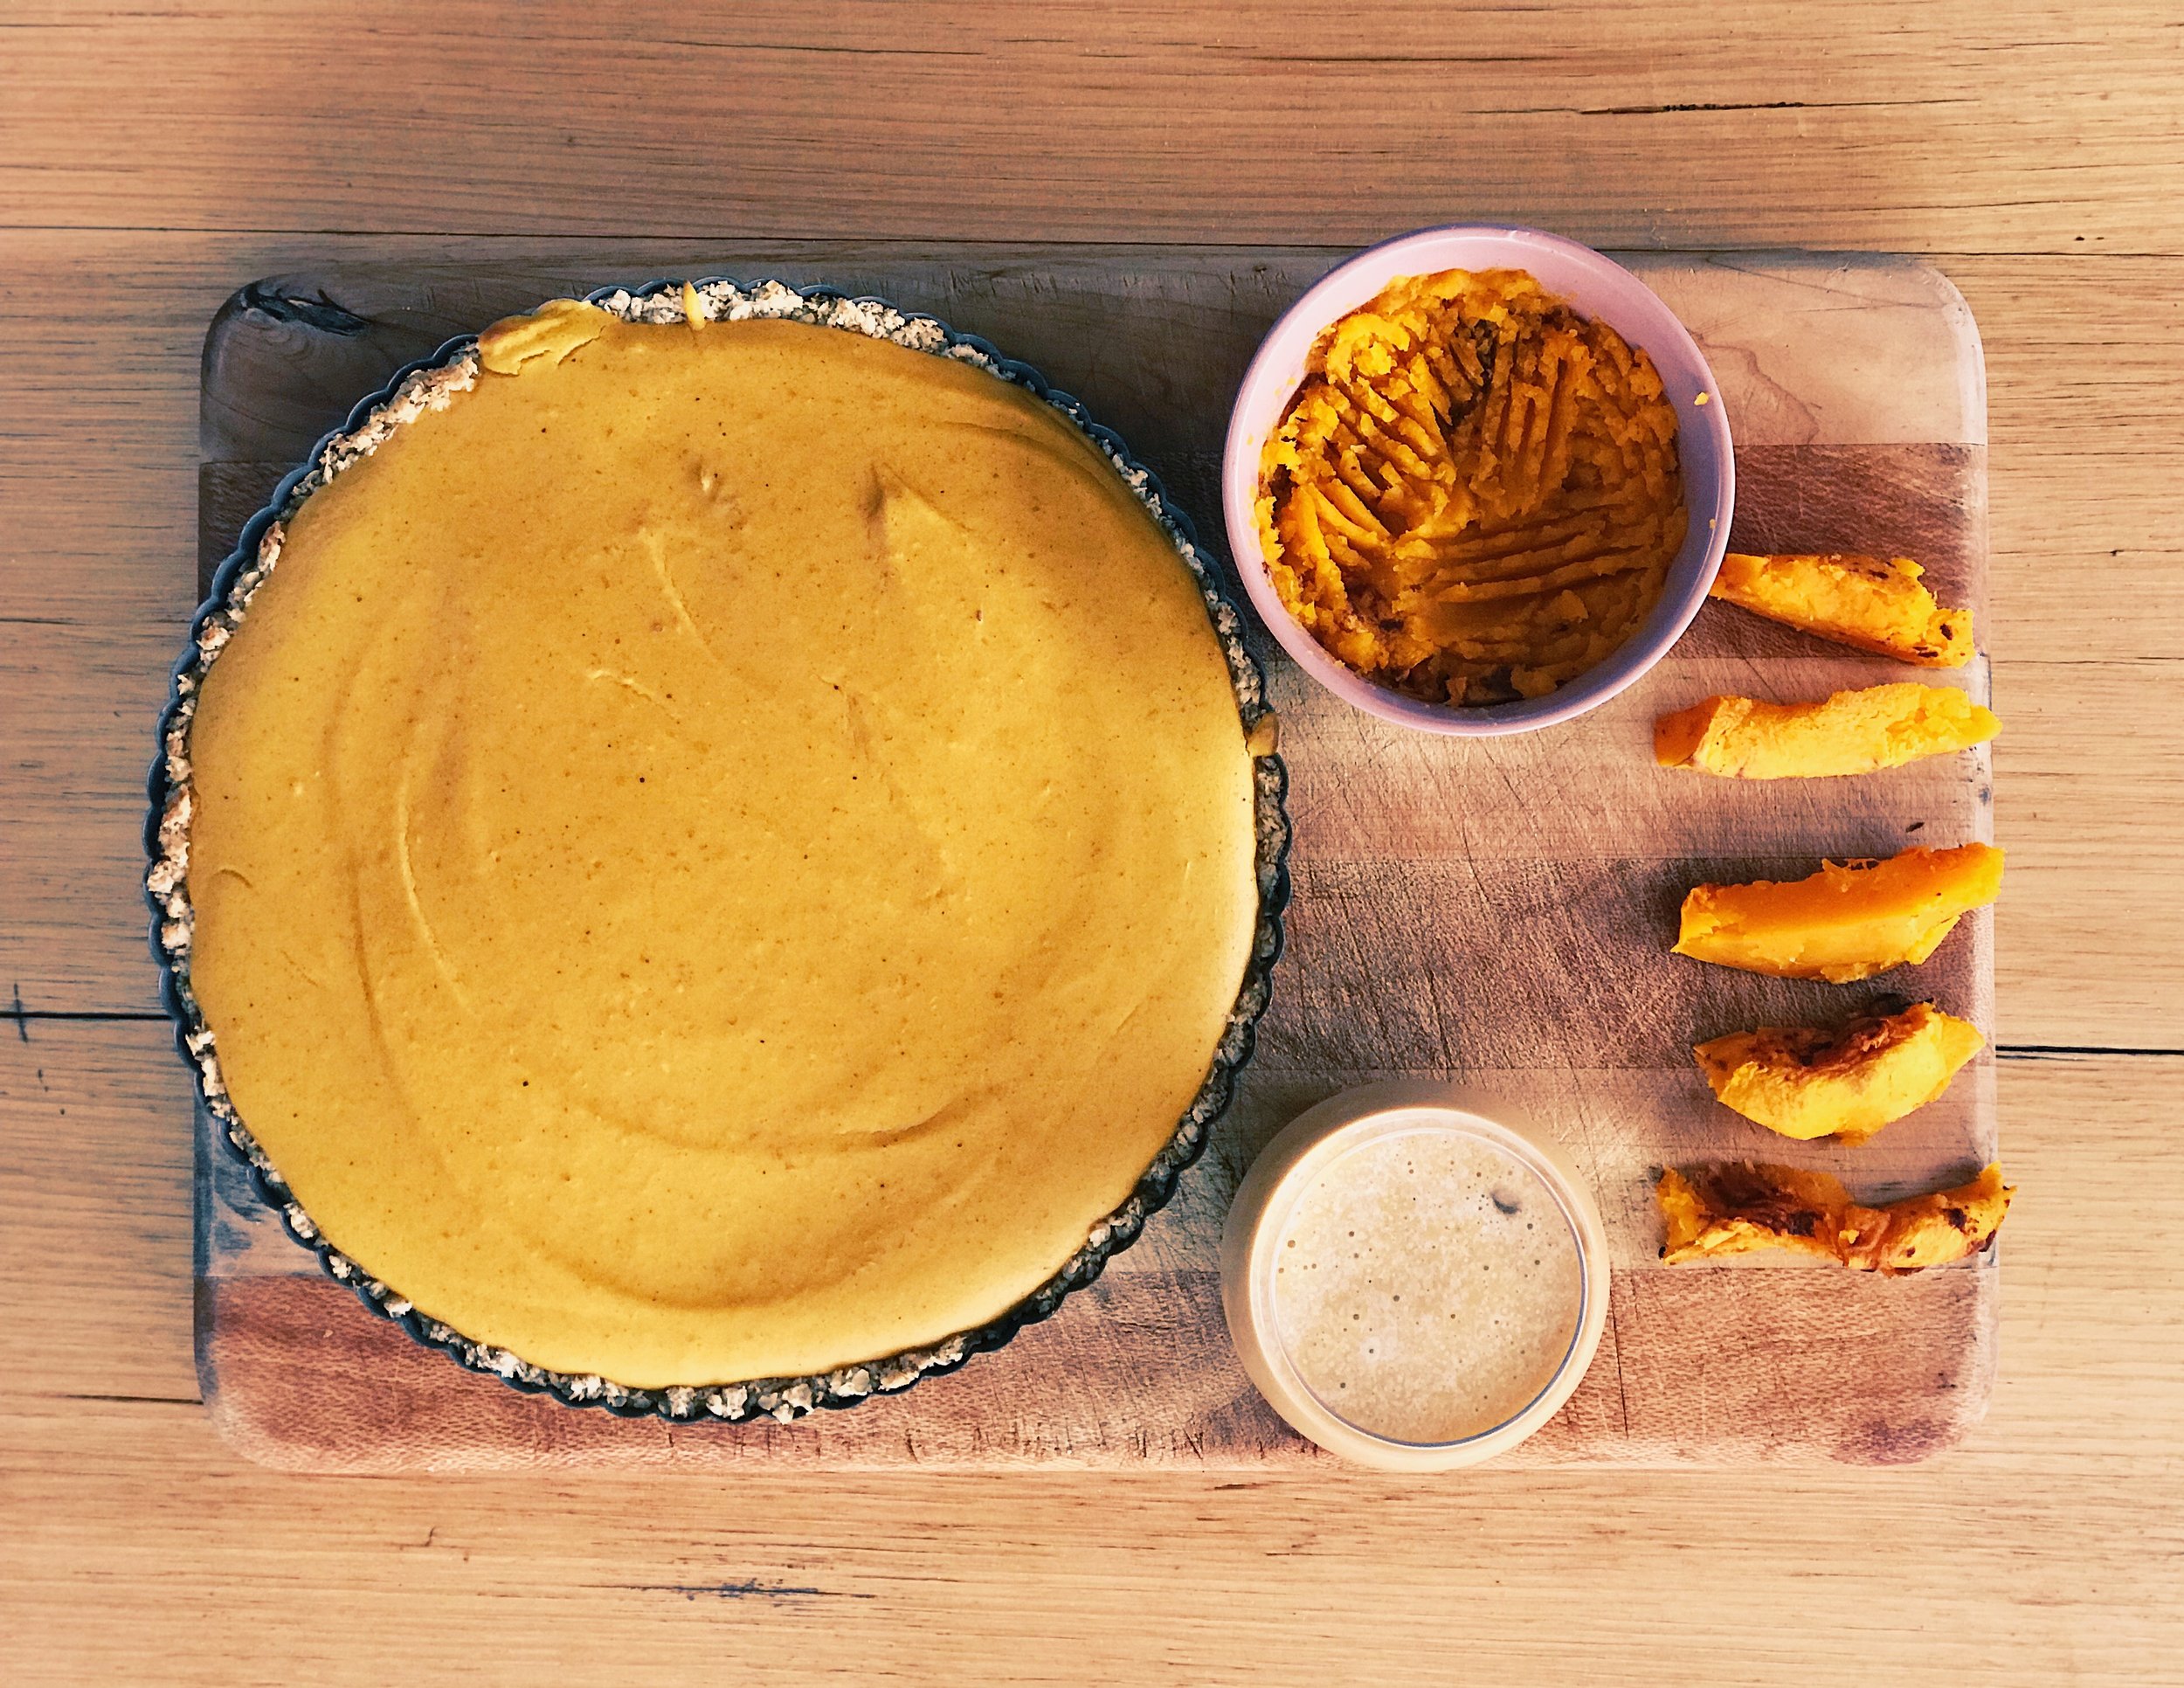 pumpkin pie smoothie